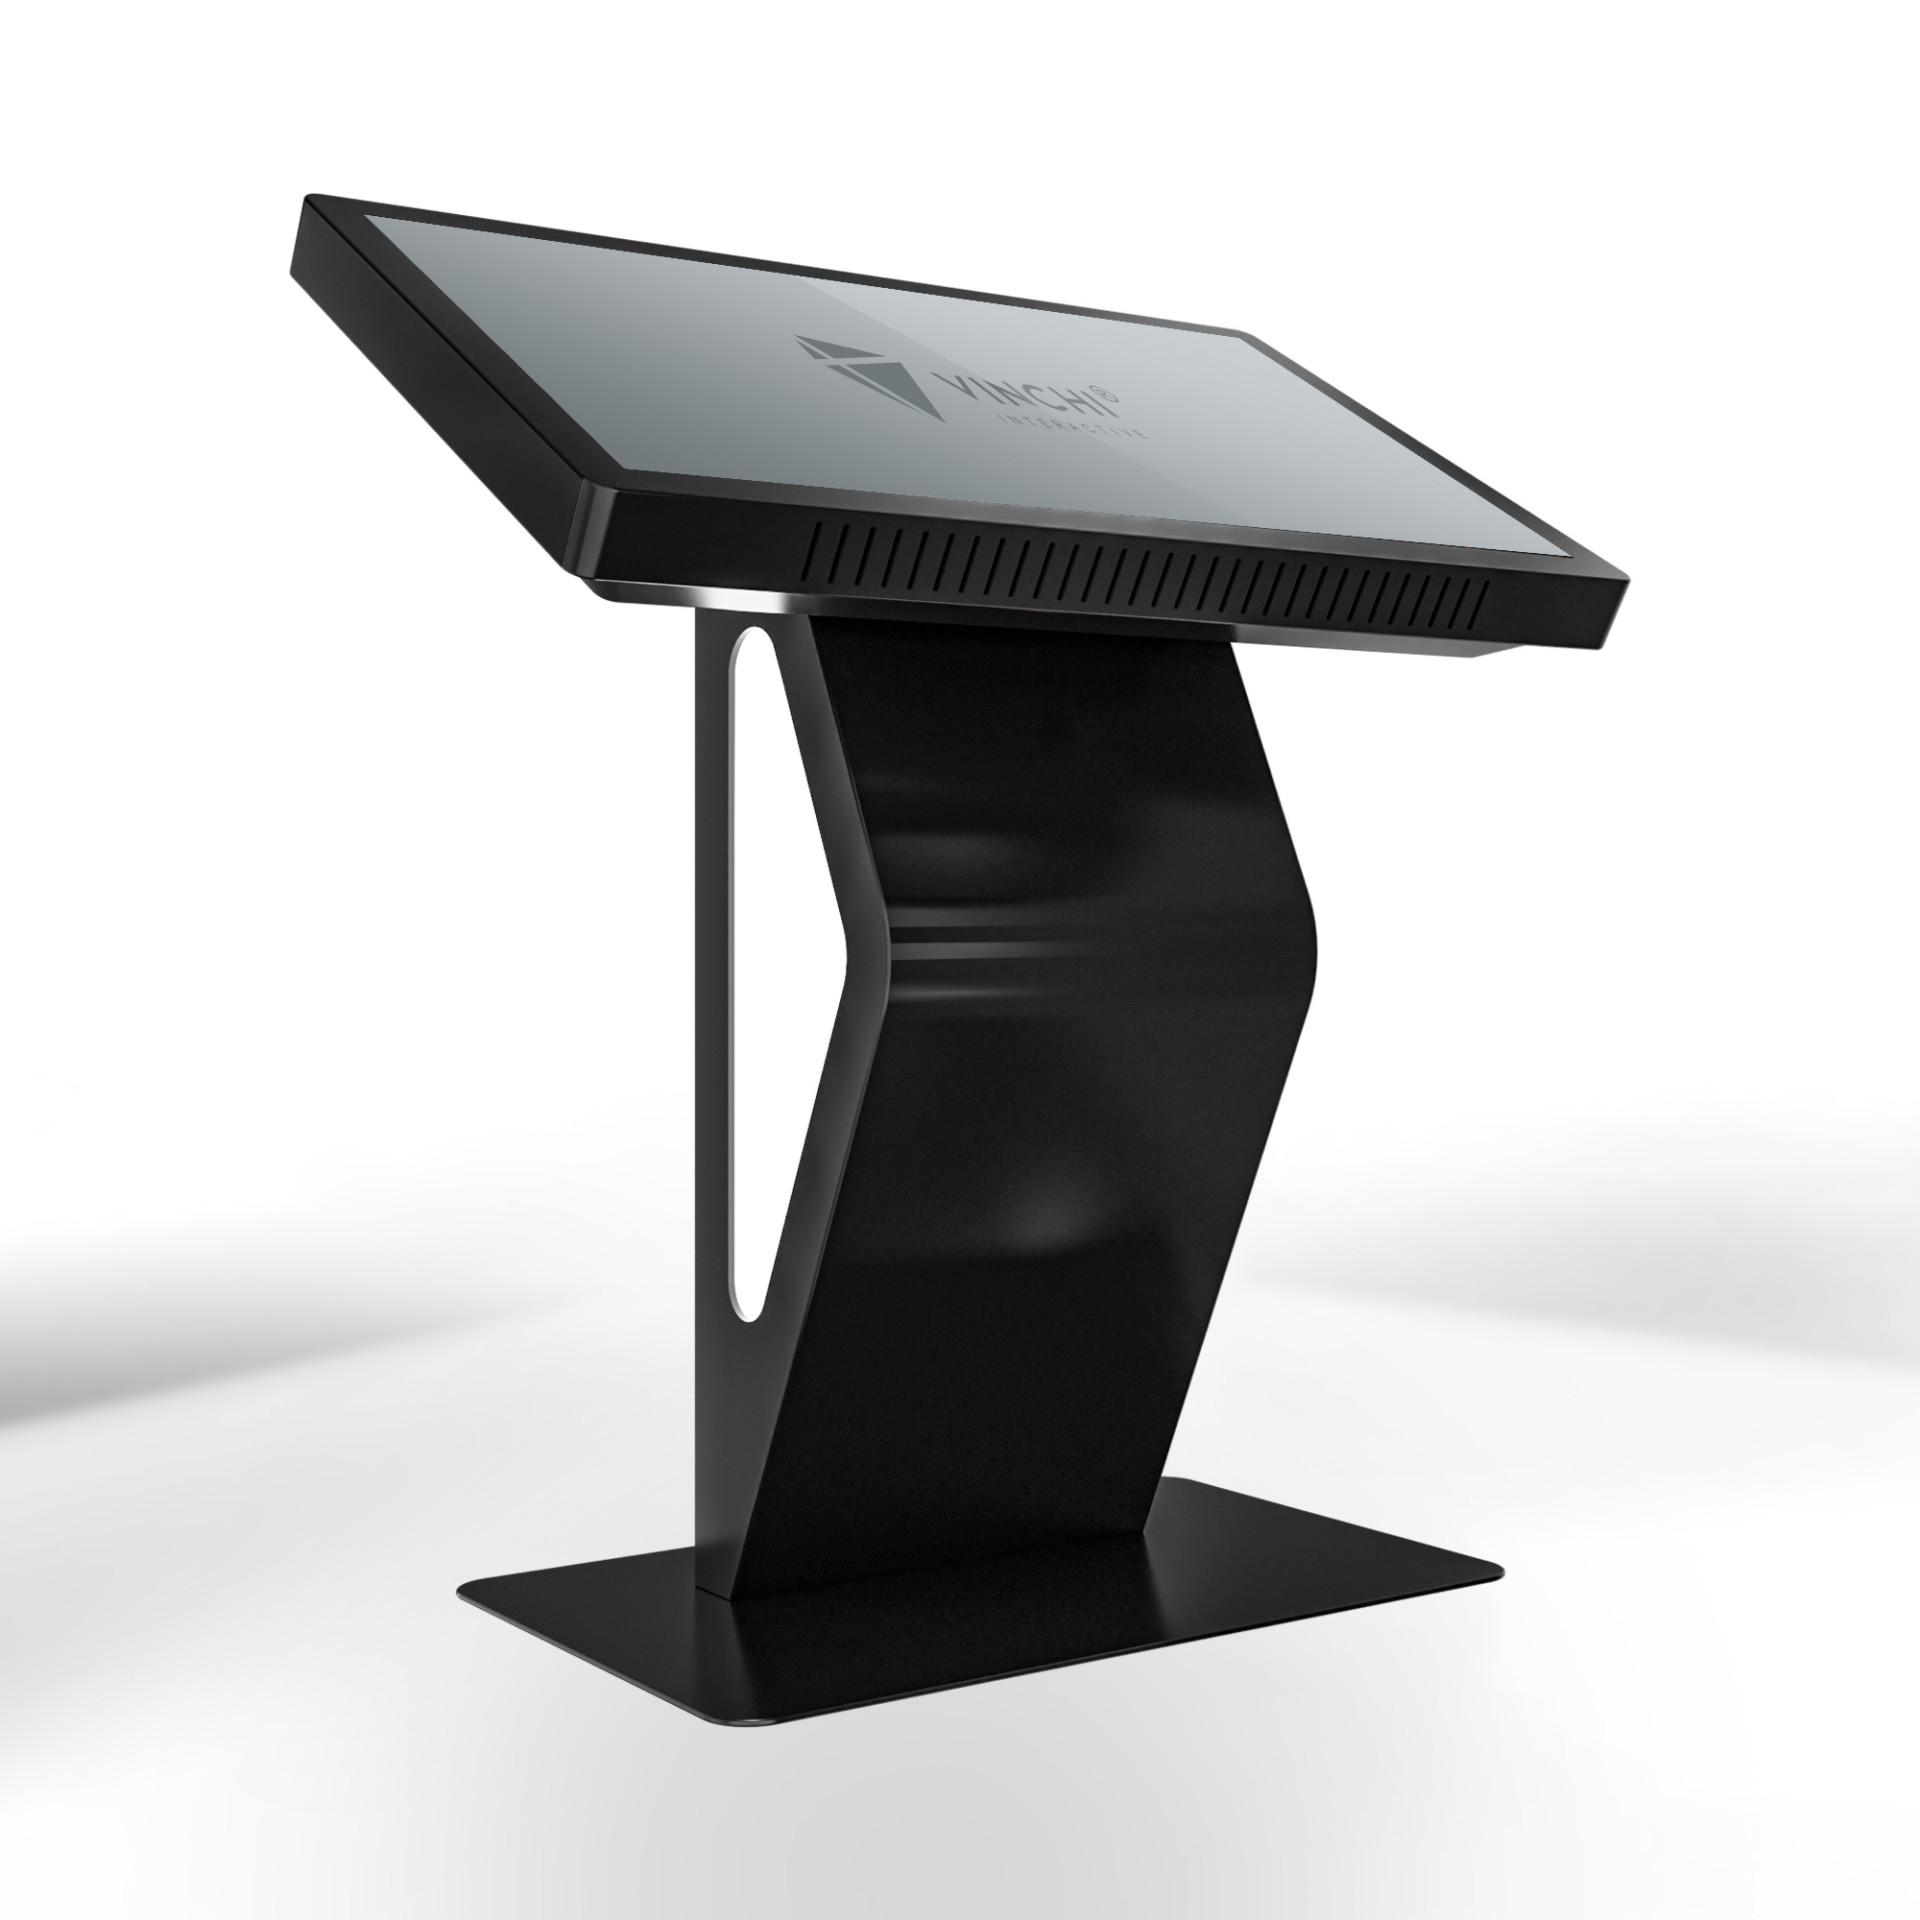 Интерактивный стол VINCHI 8 с диагональю 43 дюйма